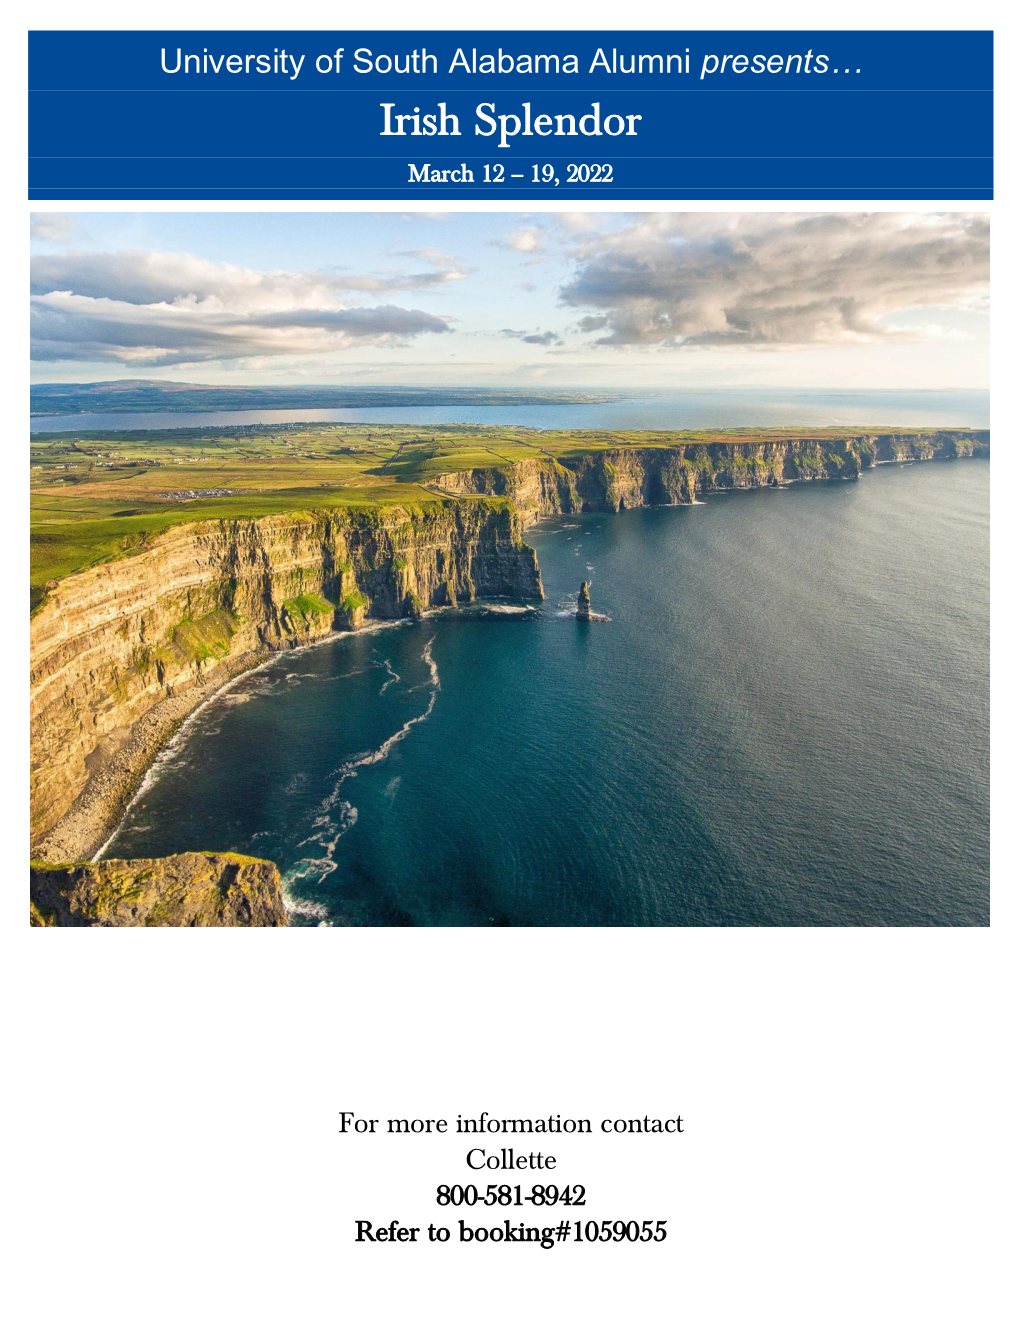 Irish Splendor March 12 – 19, 2022